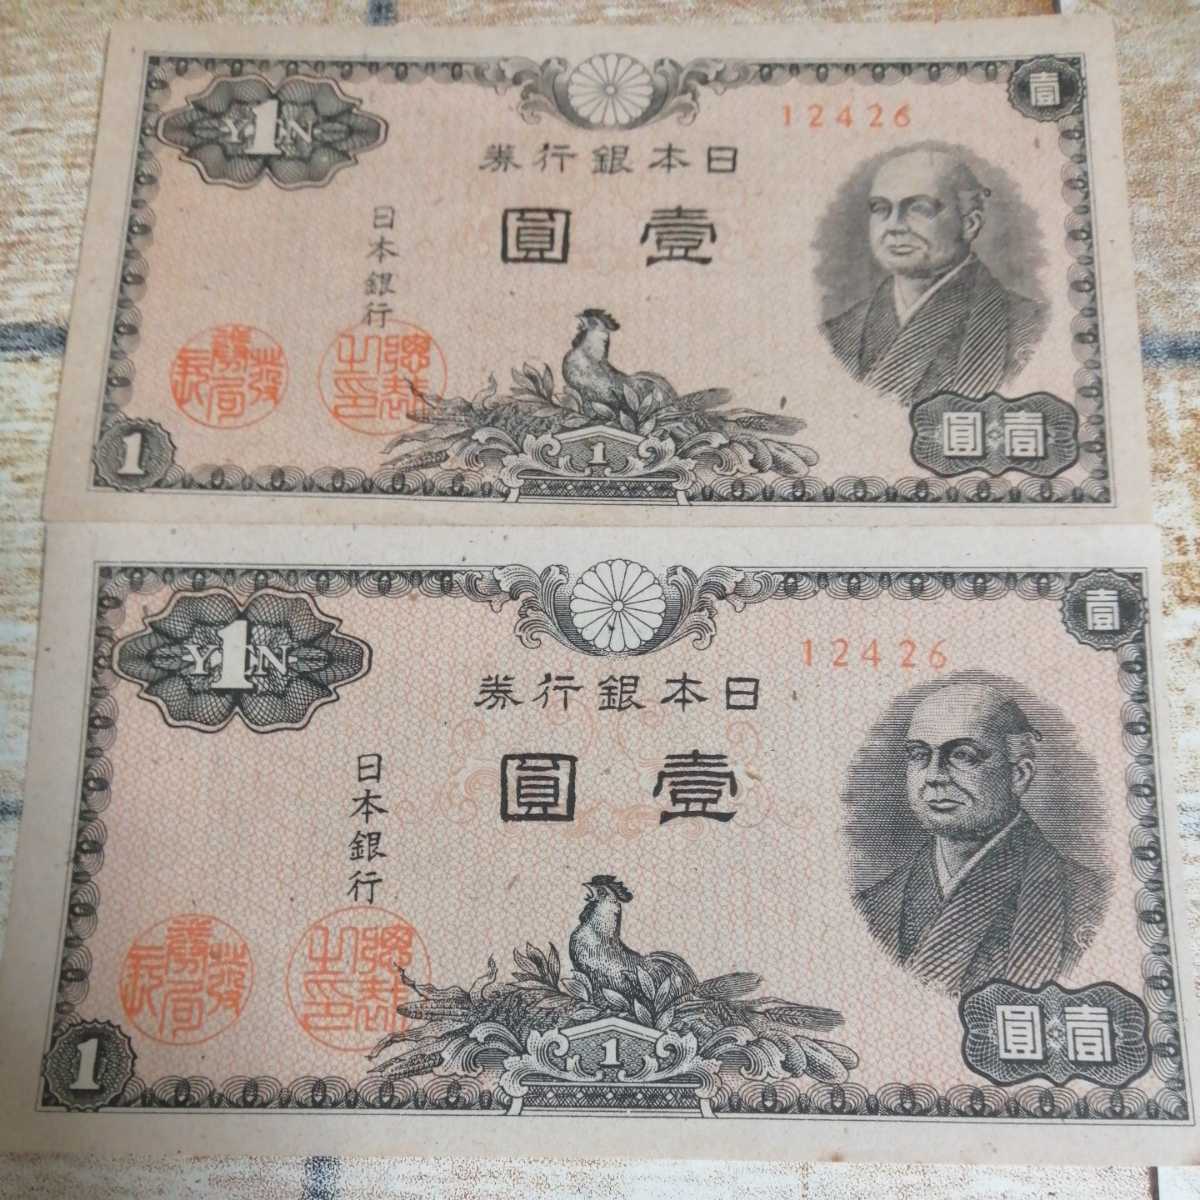 ヤフオク 日本銀行券 1円札 二宮尊徳 壹圓 紙幣 エラー サ